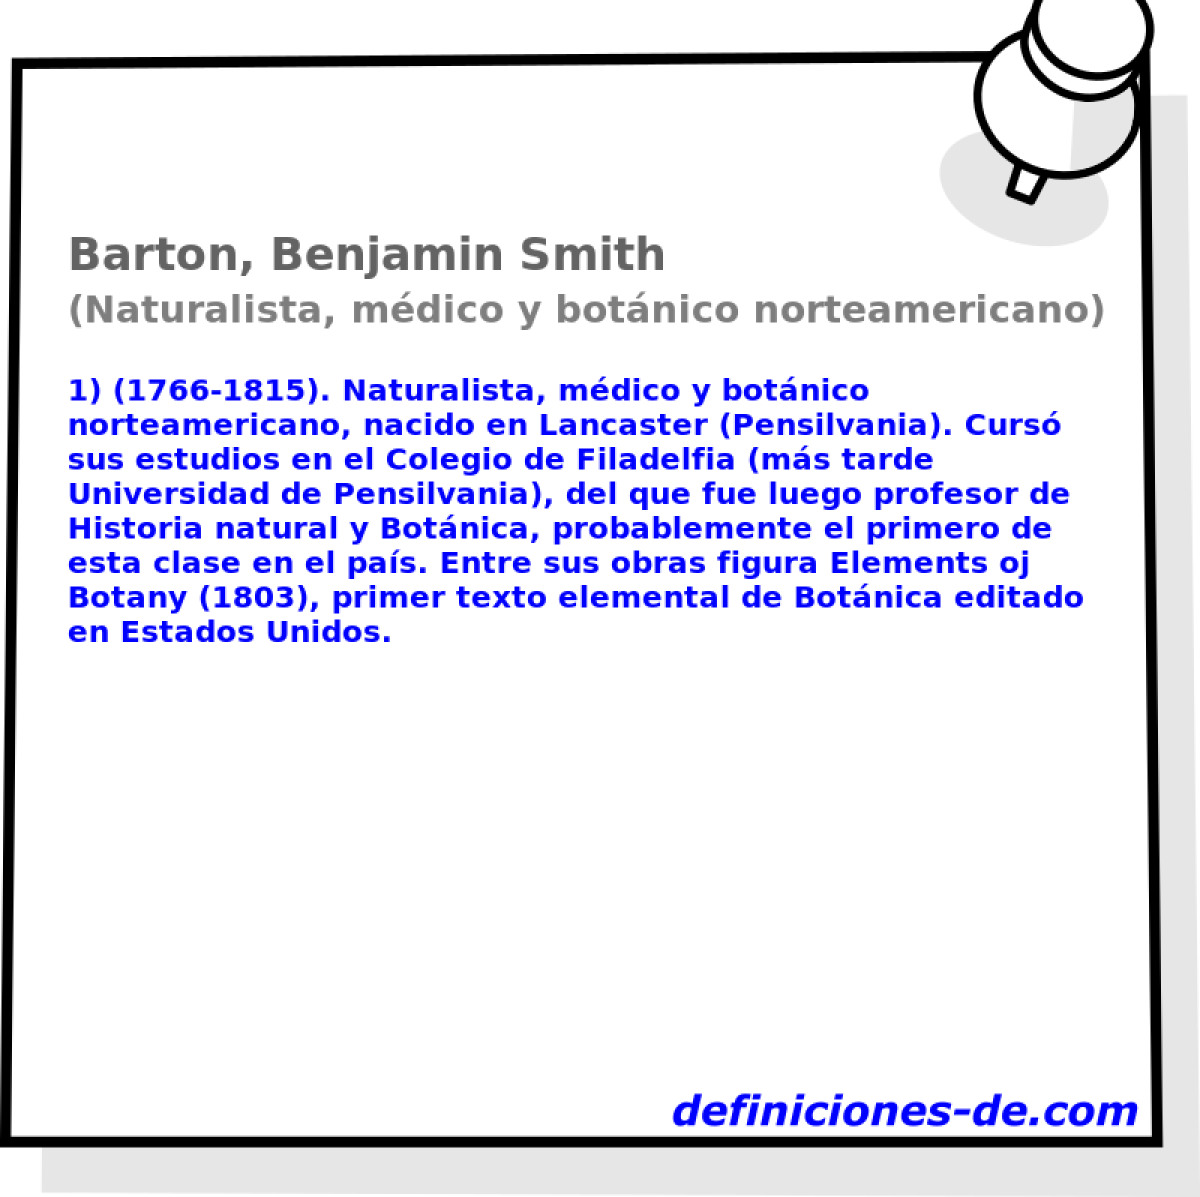 Barton, Benjamin Smith (Naturalista, mdico y botnico norteamericano)